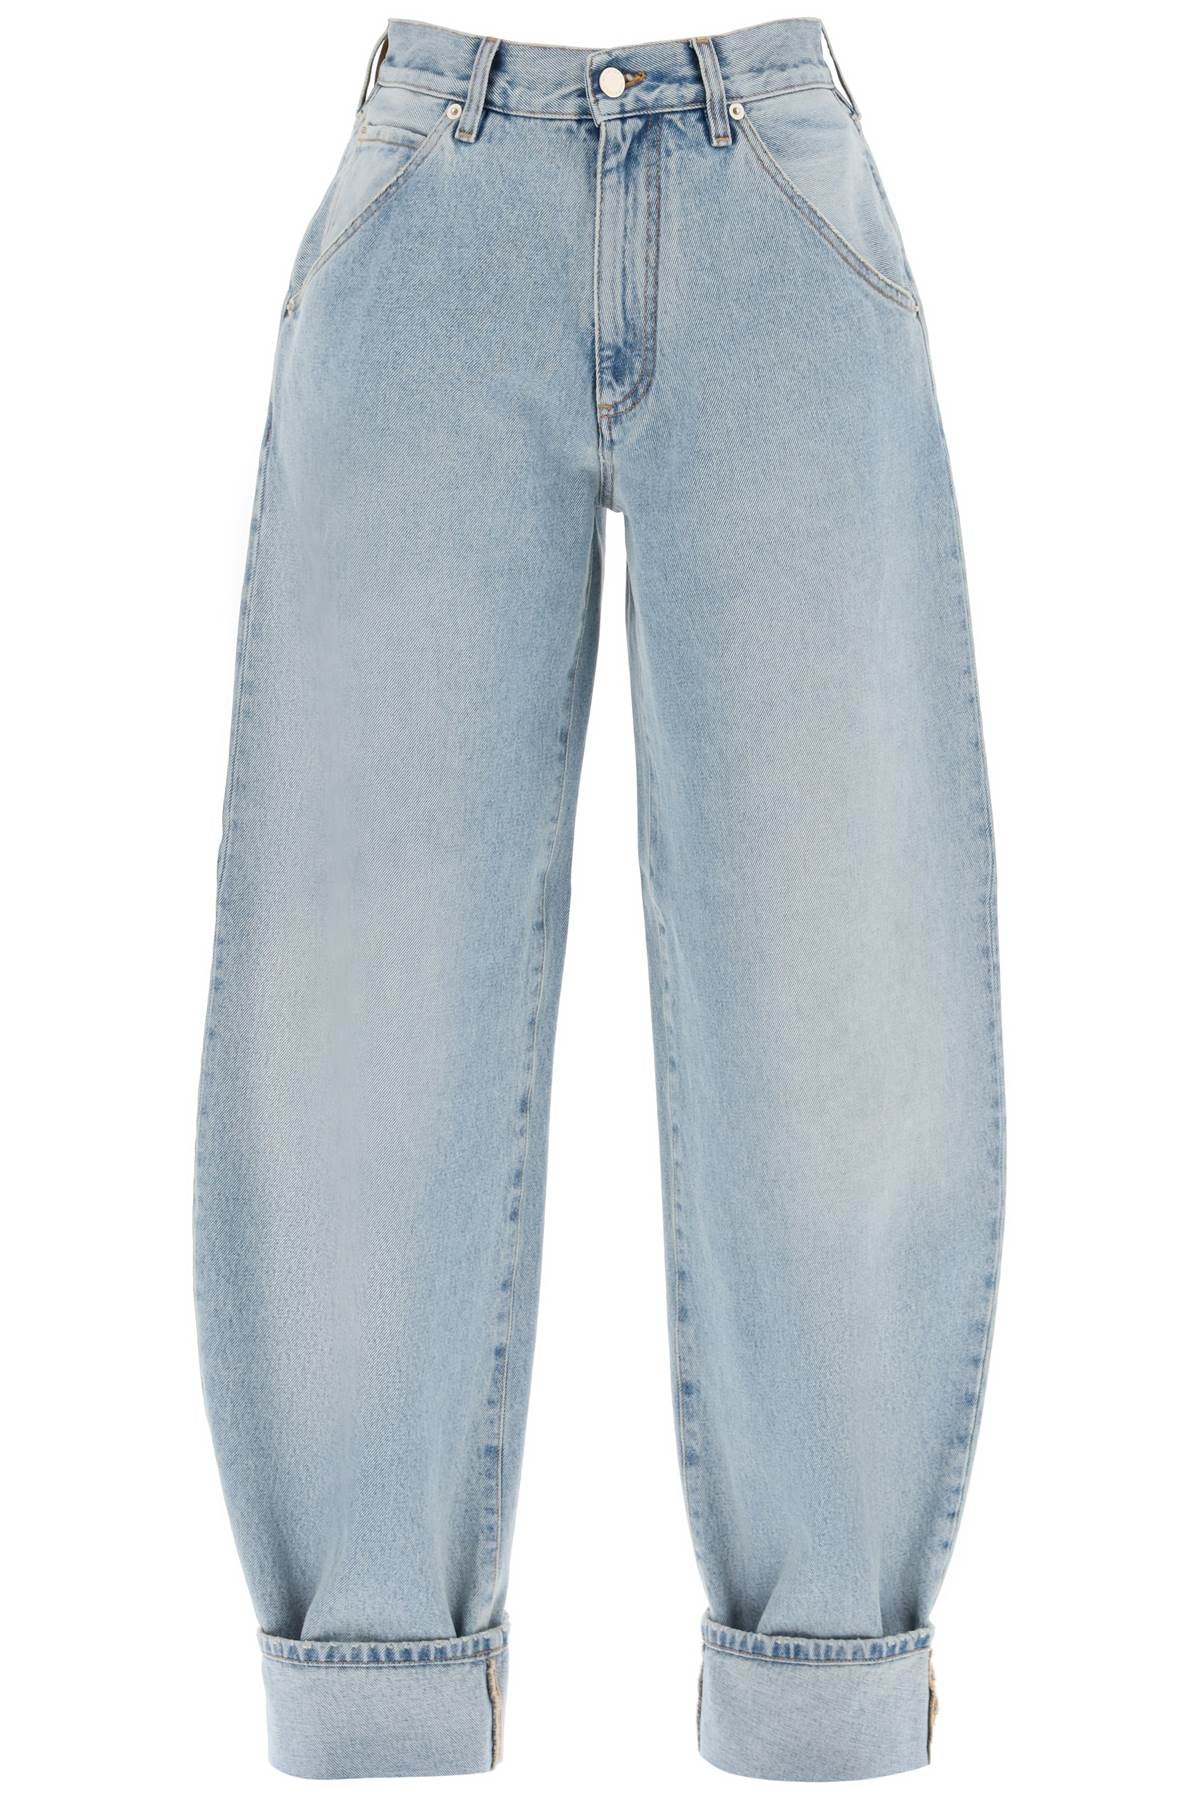 khris barrel jeans-0